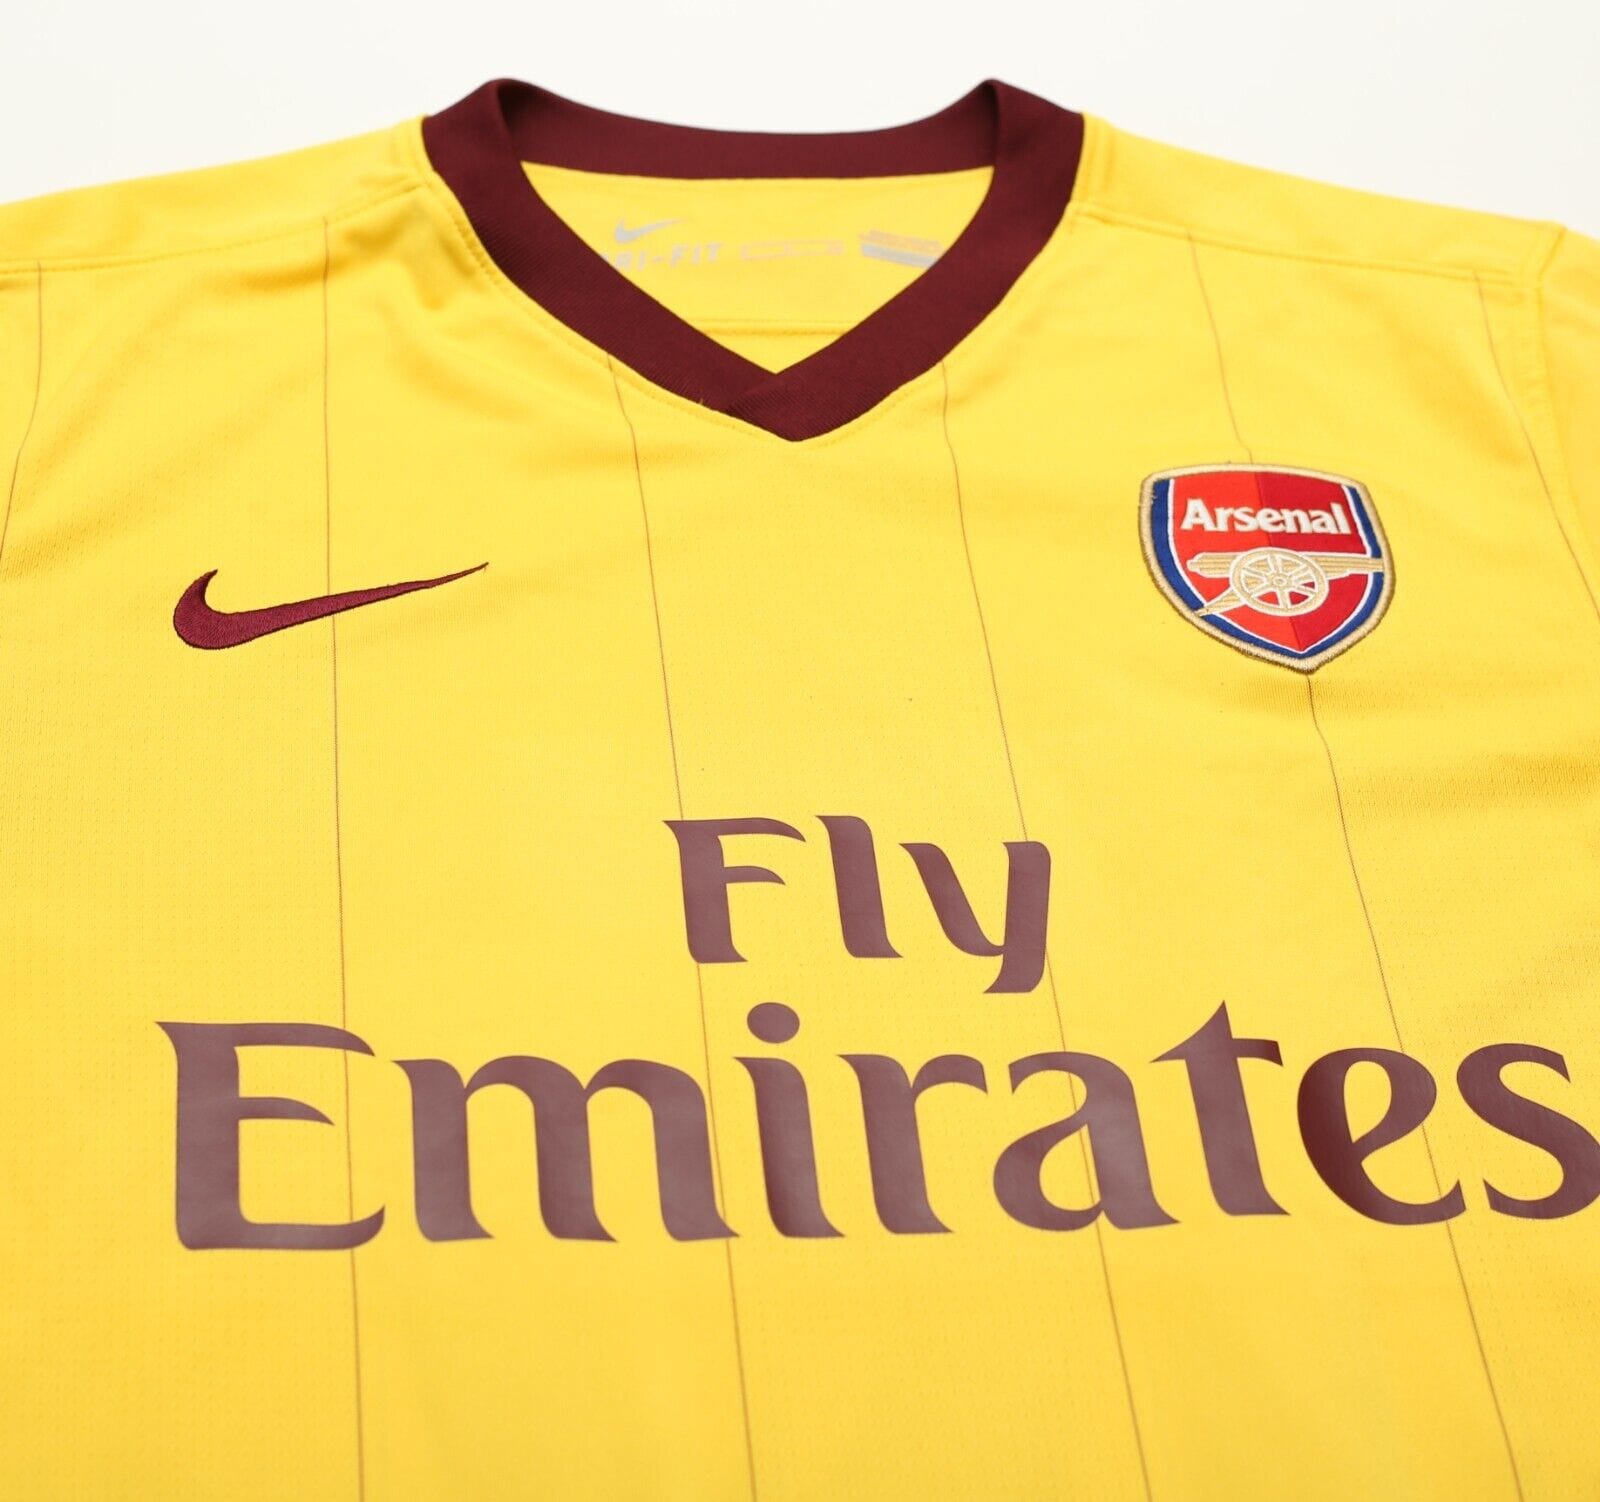 Arsenal 10 11 kit